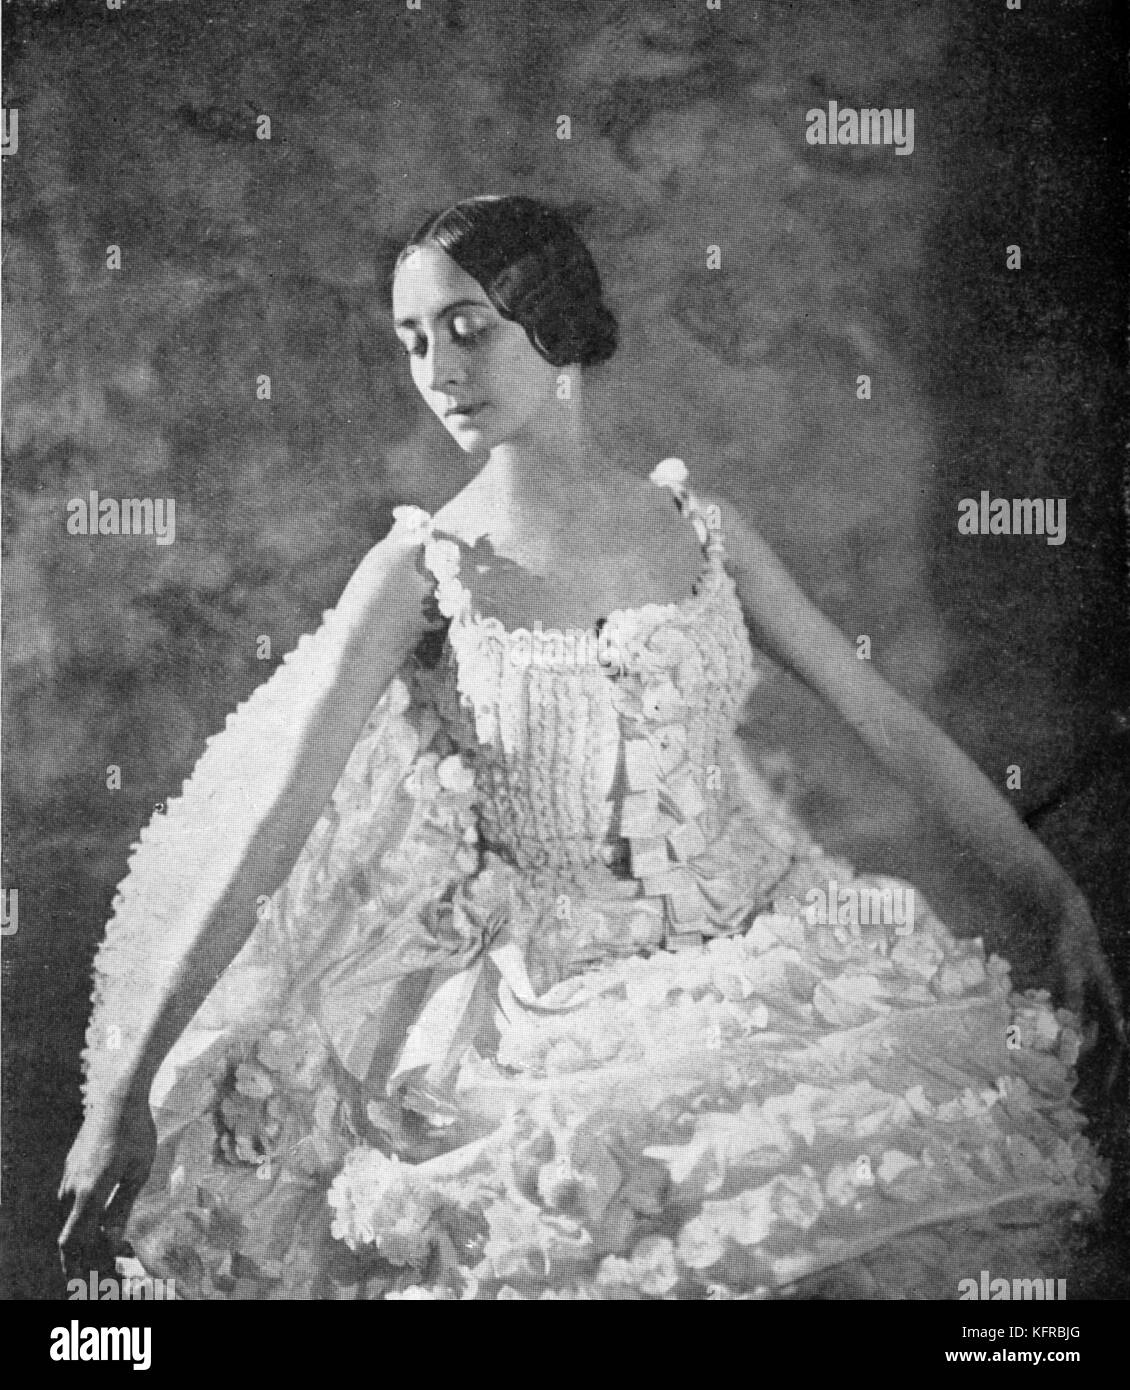 Olga Spessiva in die schlafende Prinzessin von Tschaikowsky. OS: russische Ballerina, 18. Juli 1895 - 16. September 1991 Stockfoto